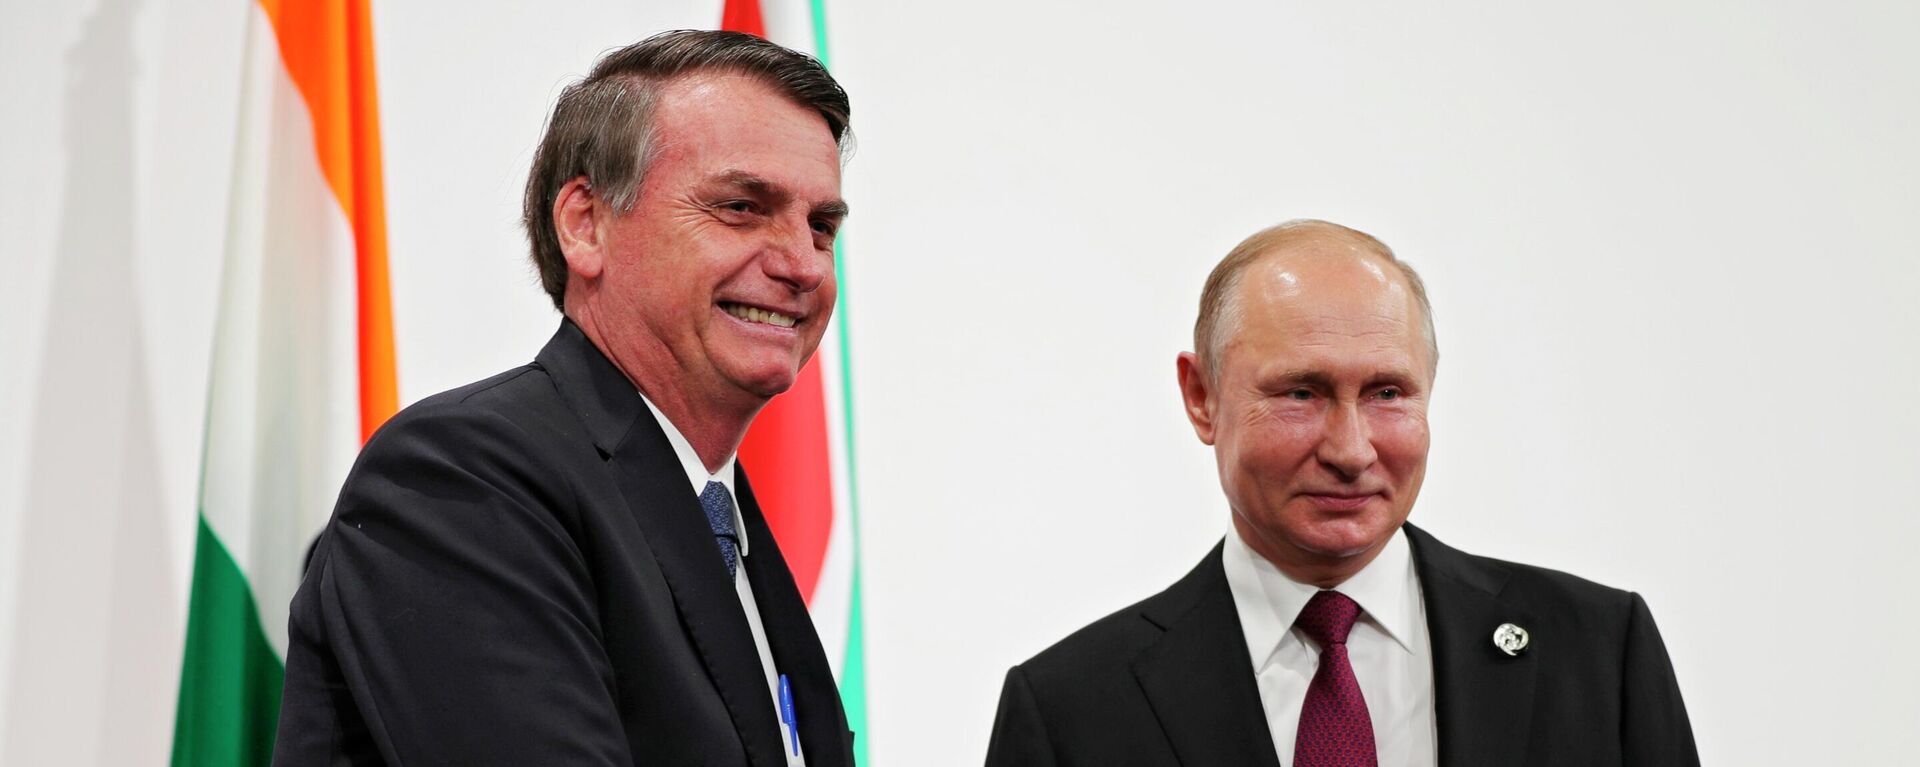 O presidente brasileiro, Jair Bolsonaro, e o presidente russo, Vladimir Putin, posam para uma foto antes de uma reunião do BRICS à margem da cúpula do G20 em Osaka, no Japão, em 28 de junho de 2019 - Sputnik Brasil, 1920, 12.07.2022